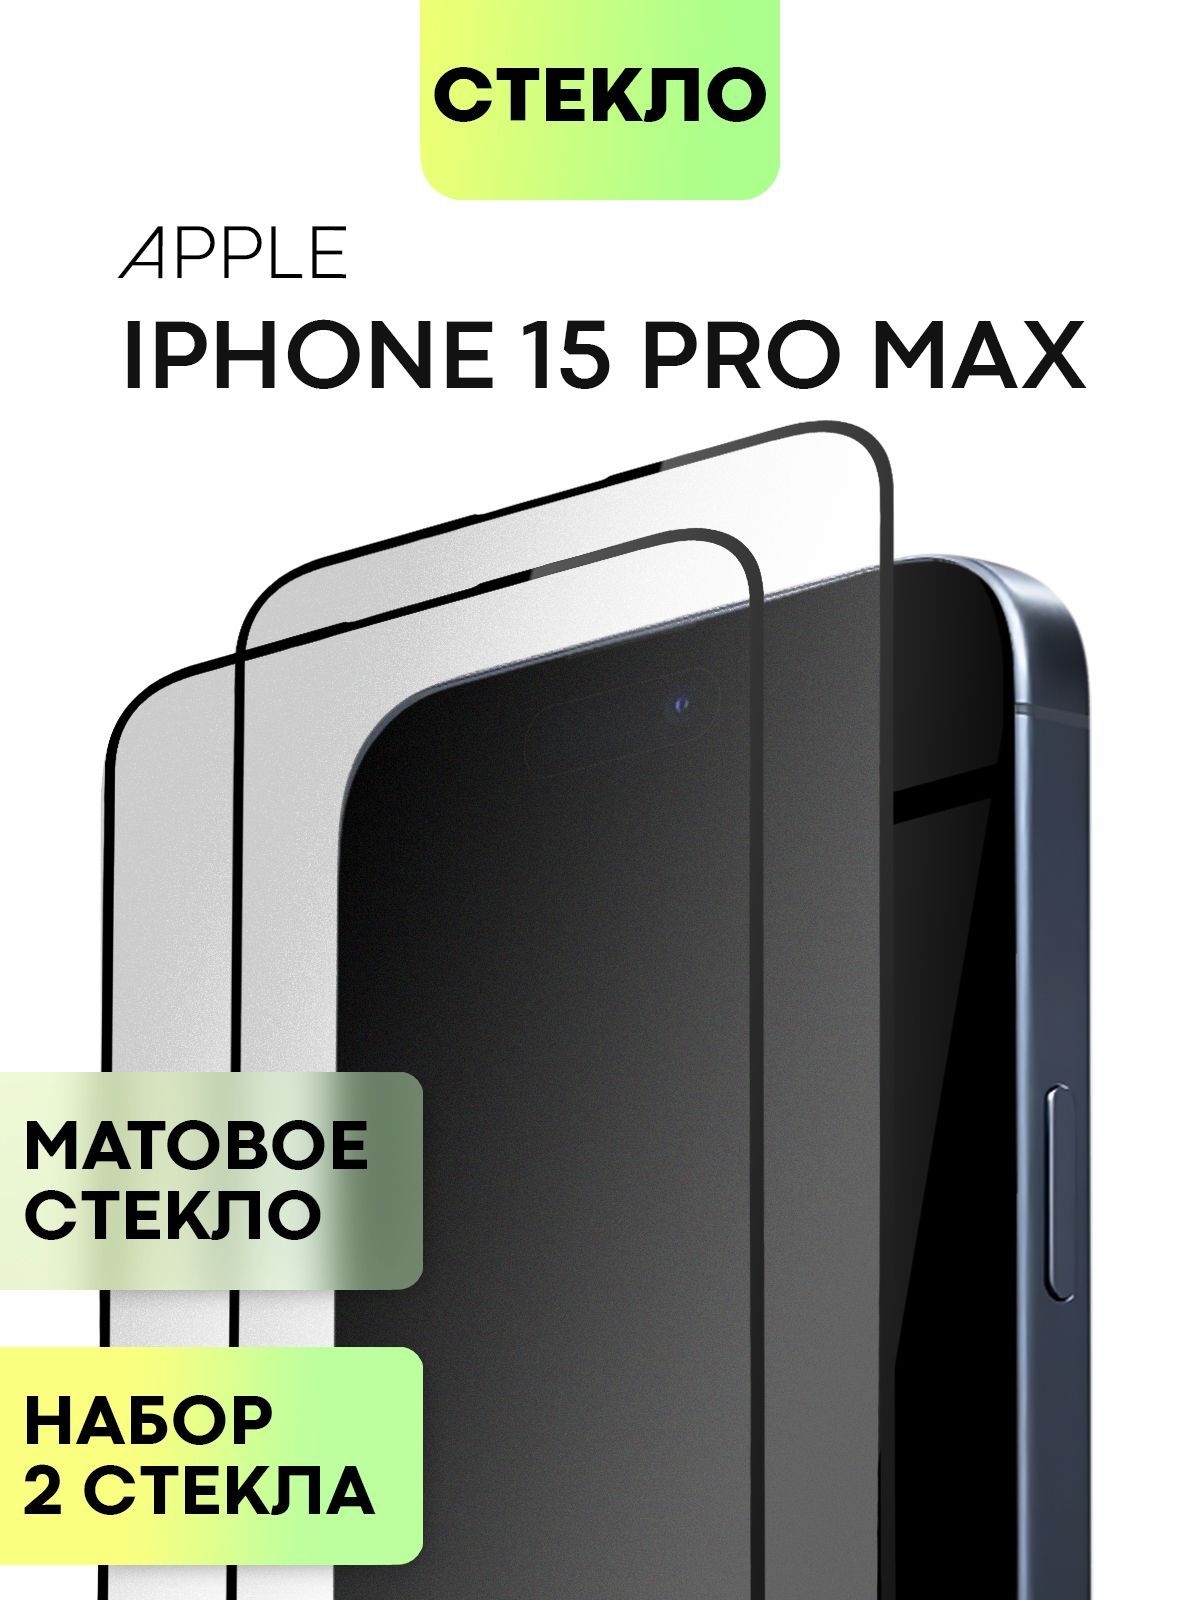 Матовое стекло BROSCORP на Apple iPhone 15 Pro Max, 2 шт